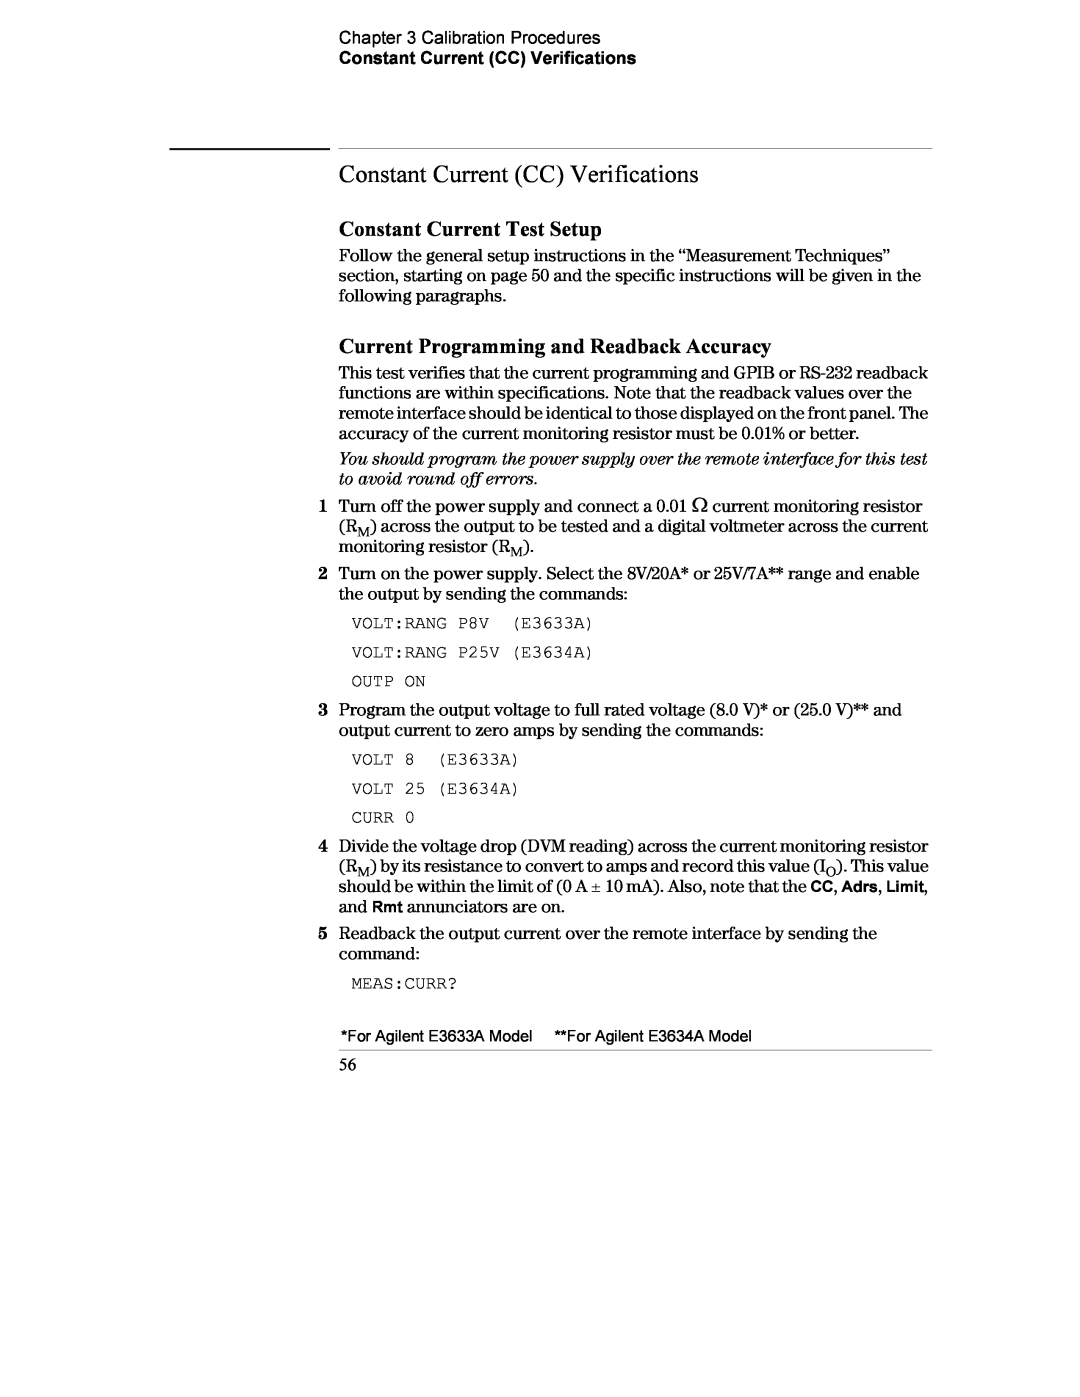 Agilent Technologies E3634A, E3633A manual Constant Current CC Verifications, Constant Current Test Setup 